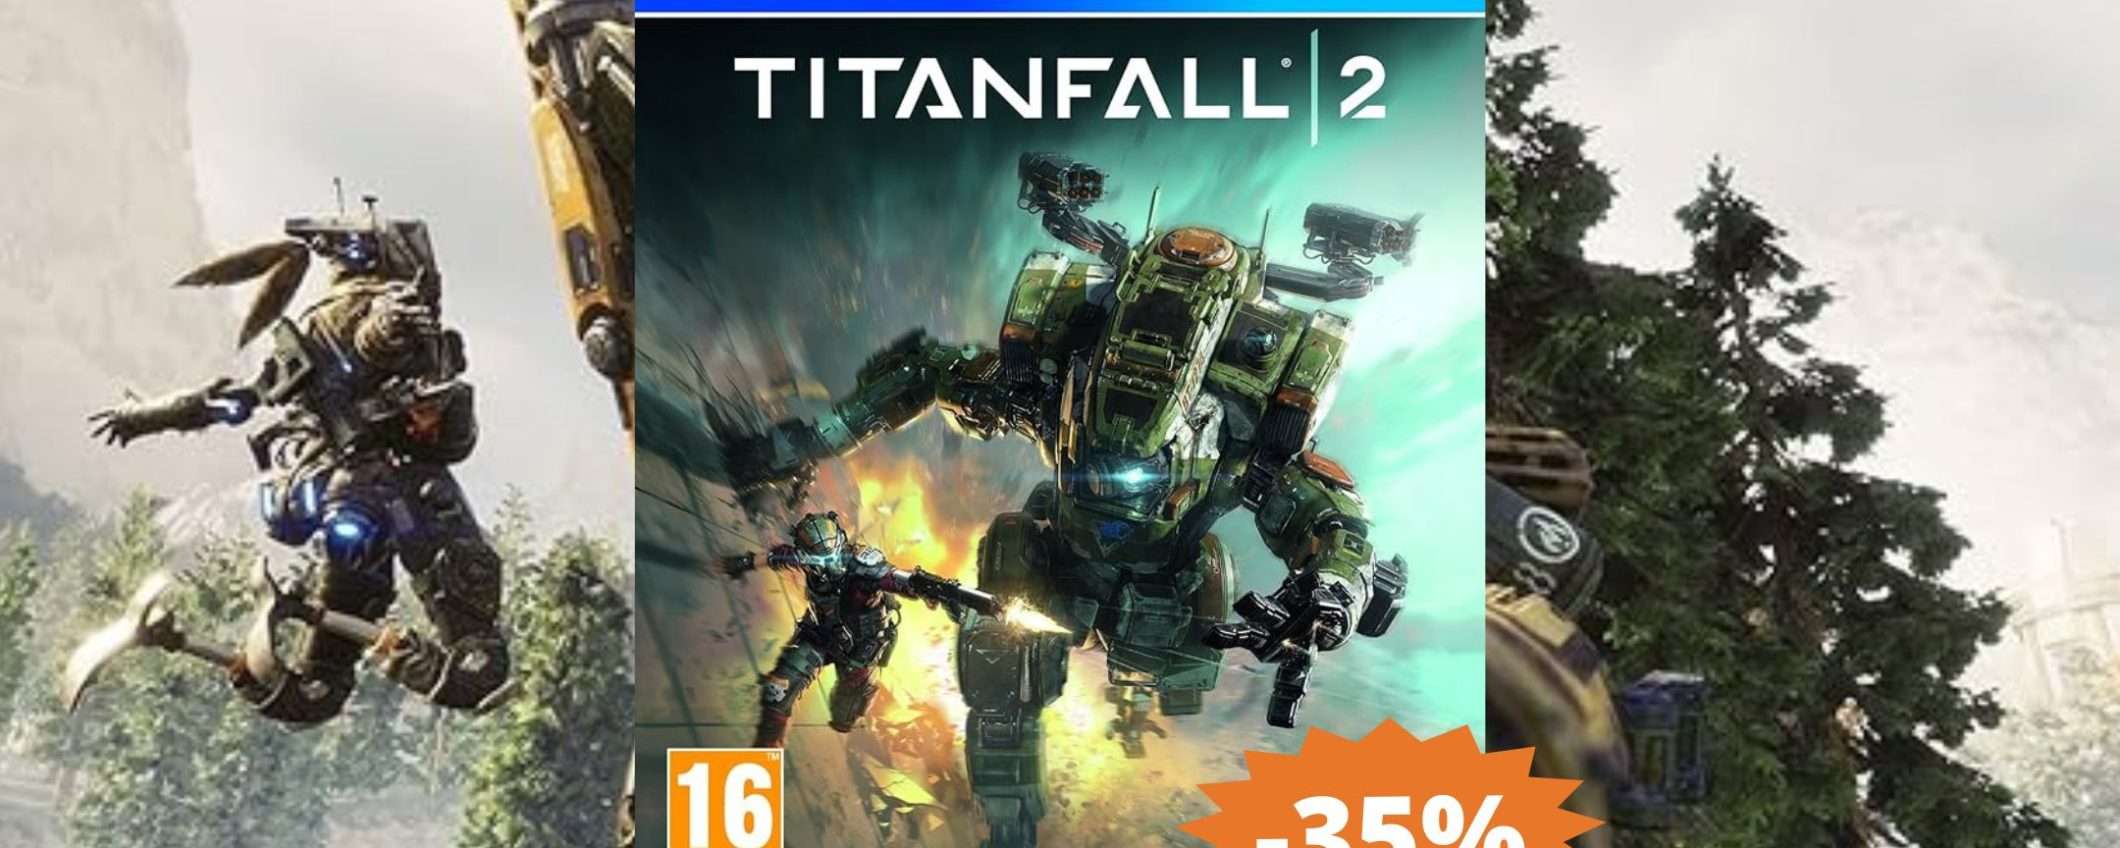 Titanfall 2 per PS4: sconto EPICO del 35% su Amazon